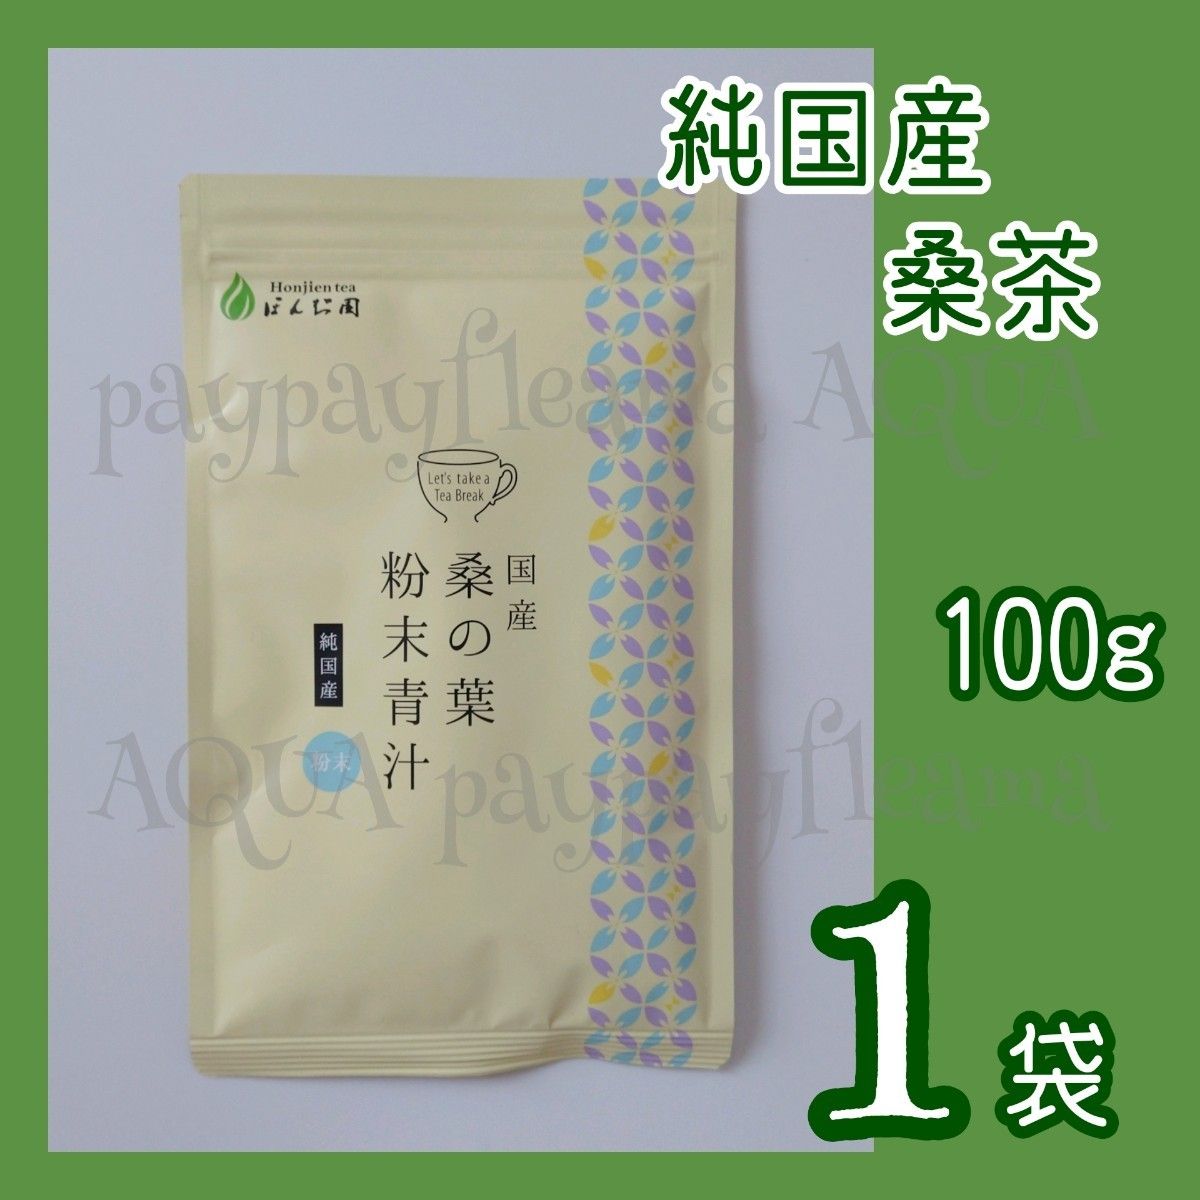 氷温熟成  桑の葉茶  10包×3個  お茶  飲料  茶  緑茶  桑の葉